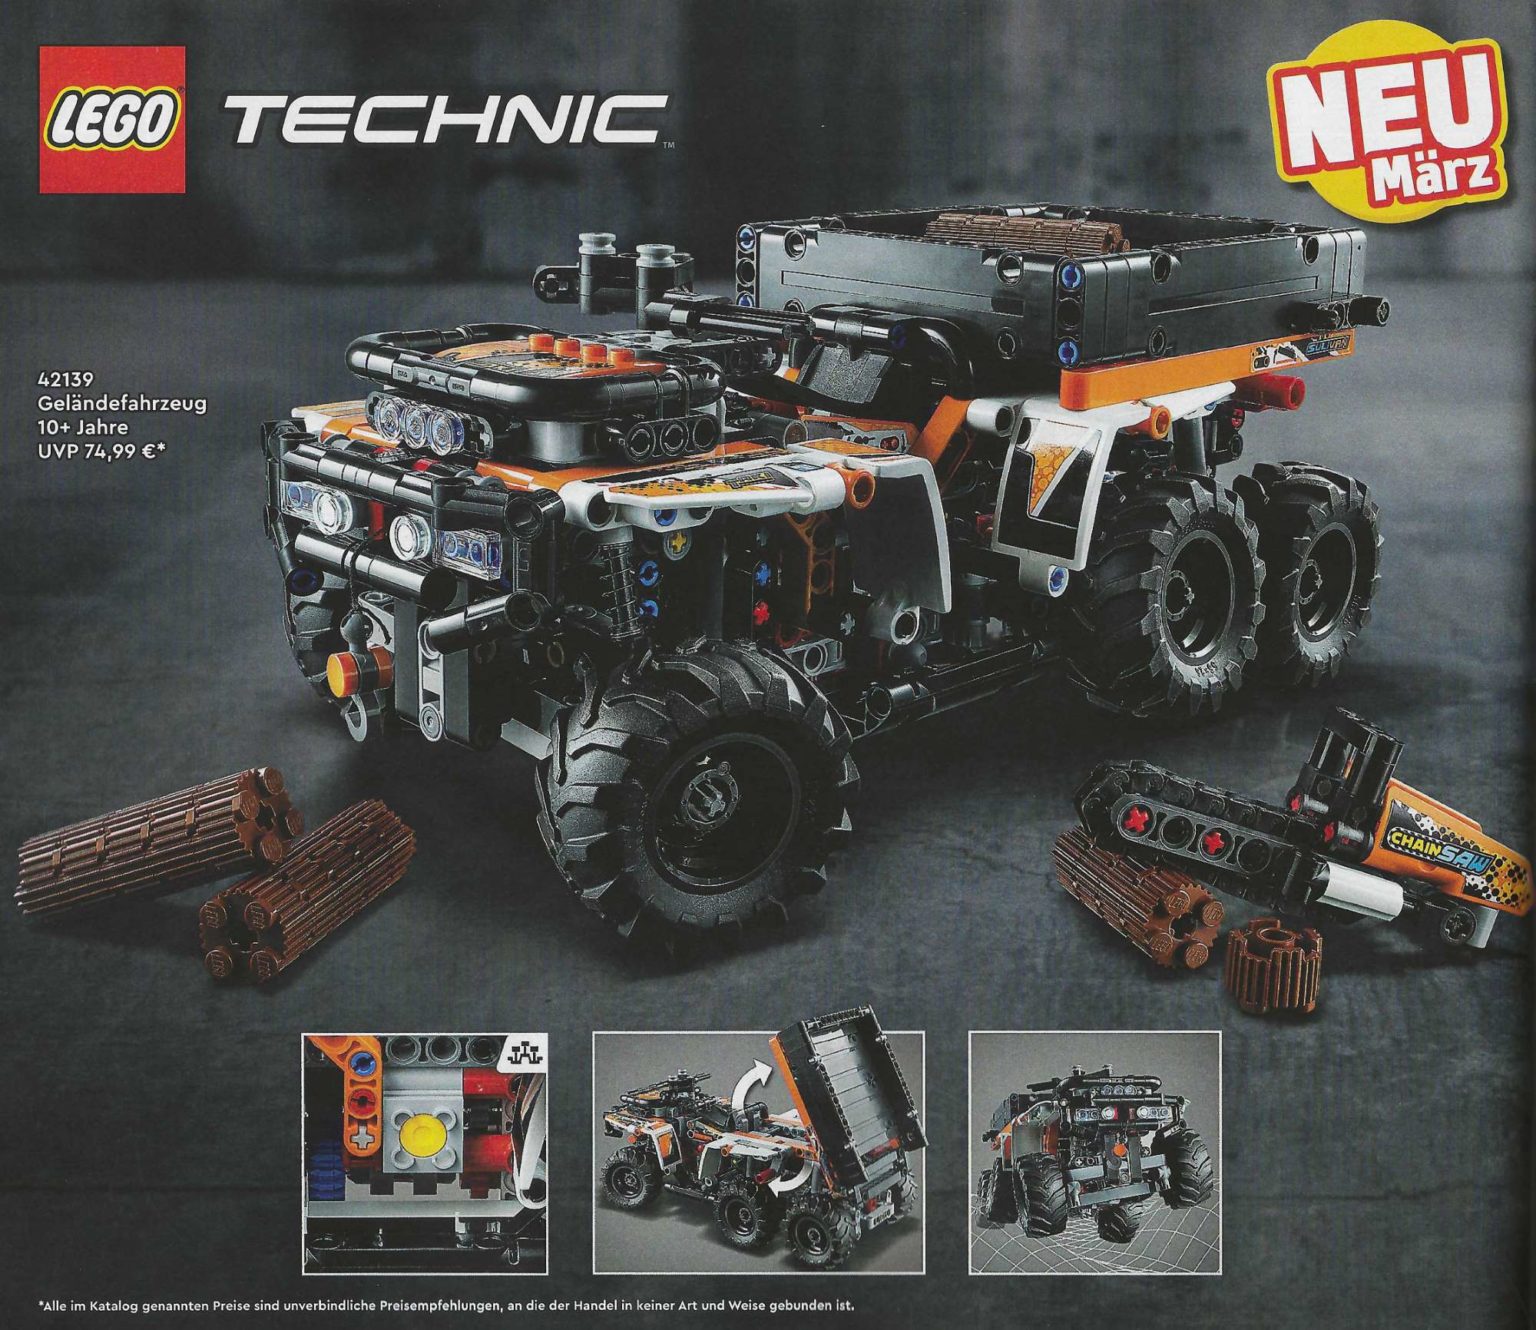 The (42136) - 4WD 9620R Brick LEGO Technic Tractor Deere Fan Revealed John